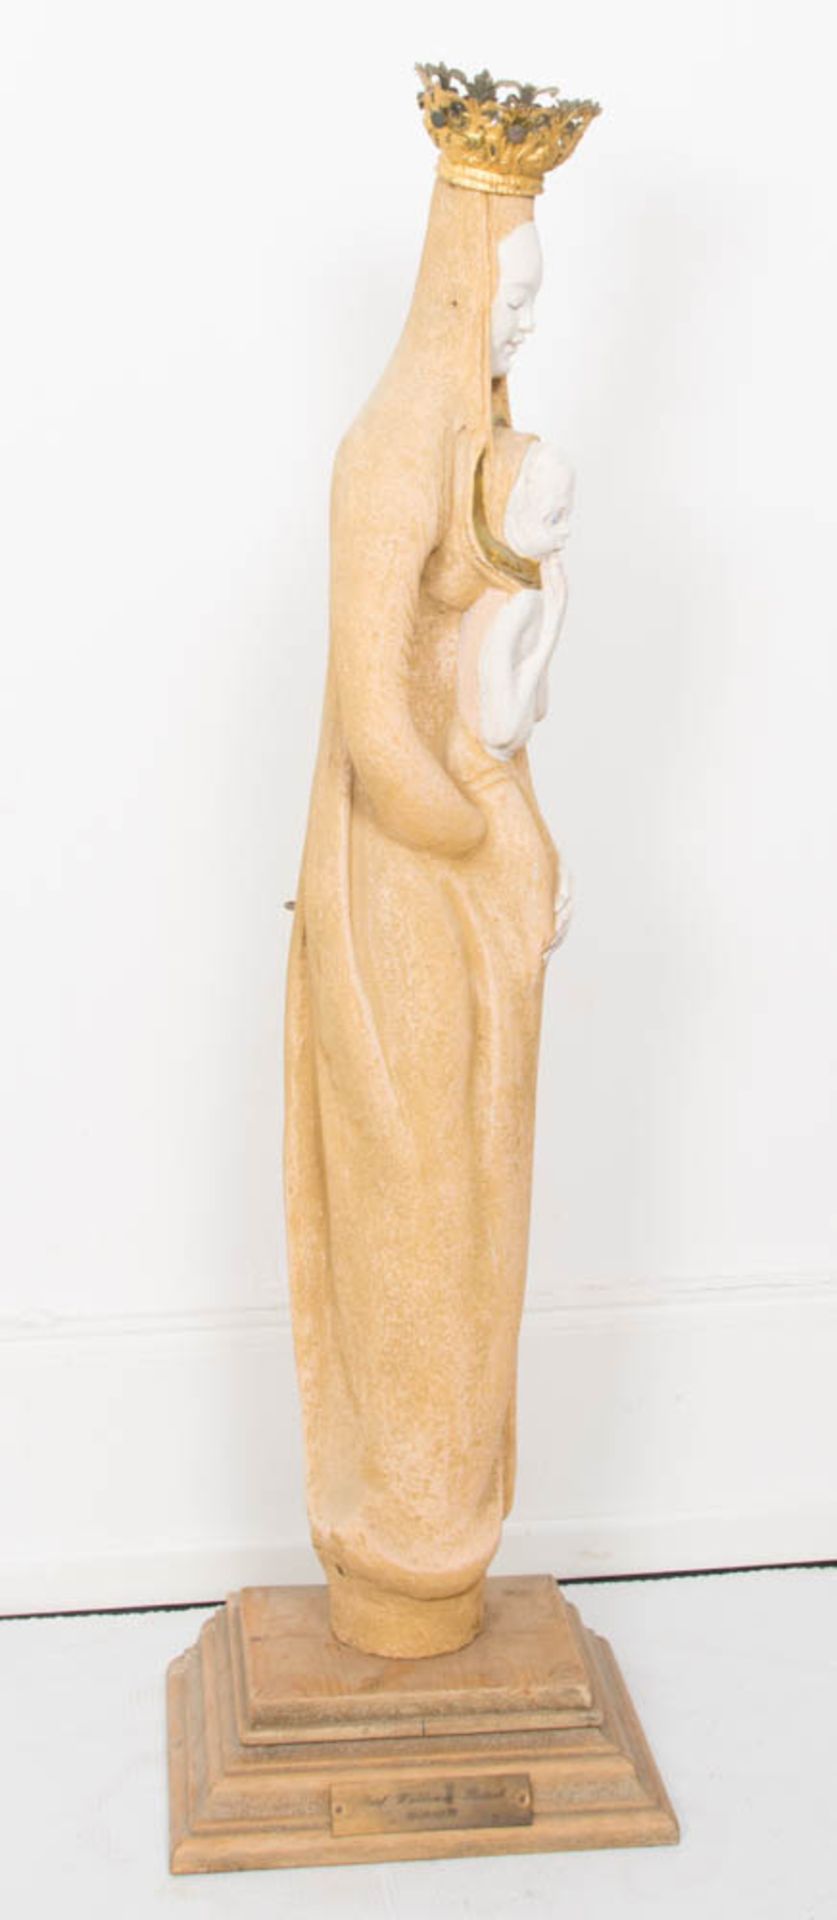 Skulptur der Madonna mit Kind auf Holzsockel. Stein/Metall/Holz. - Bild 5 aus 7